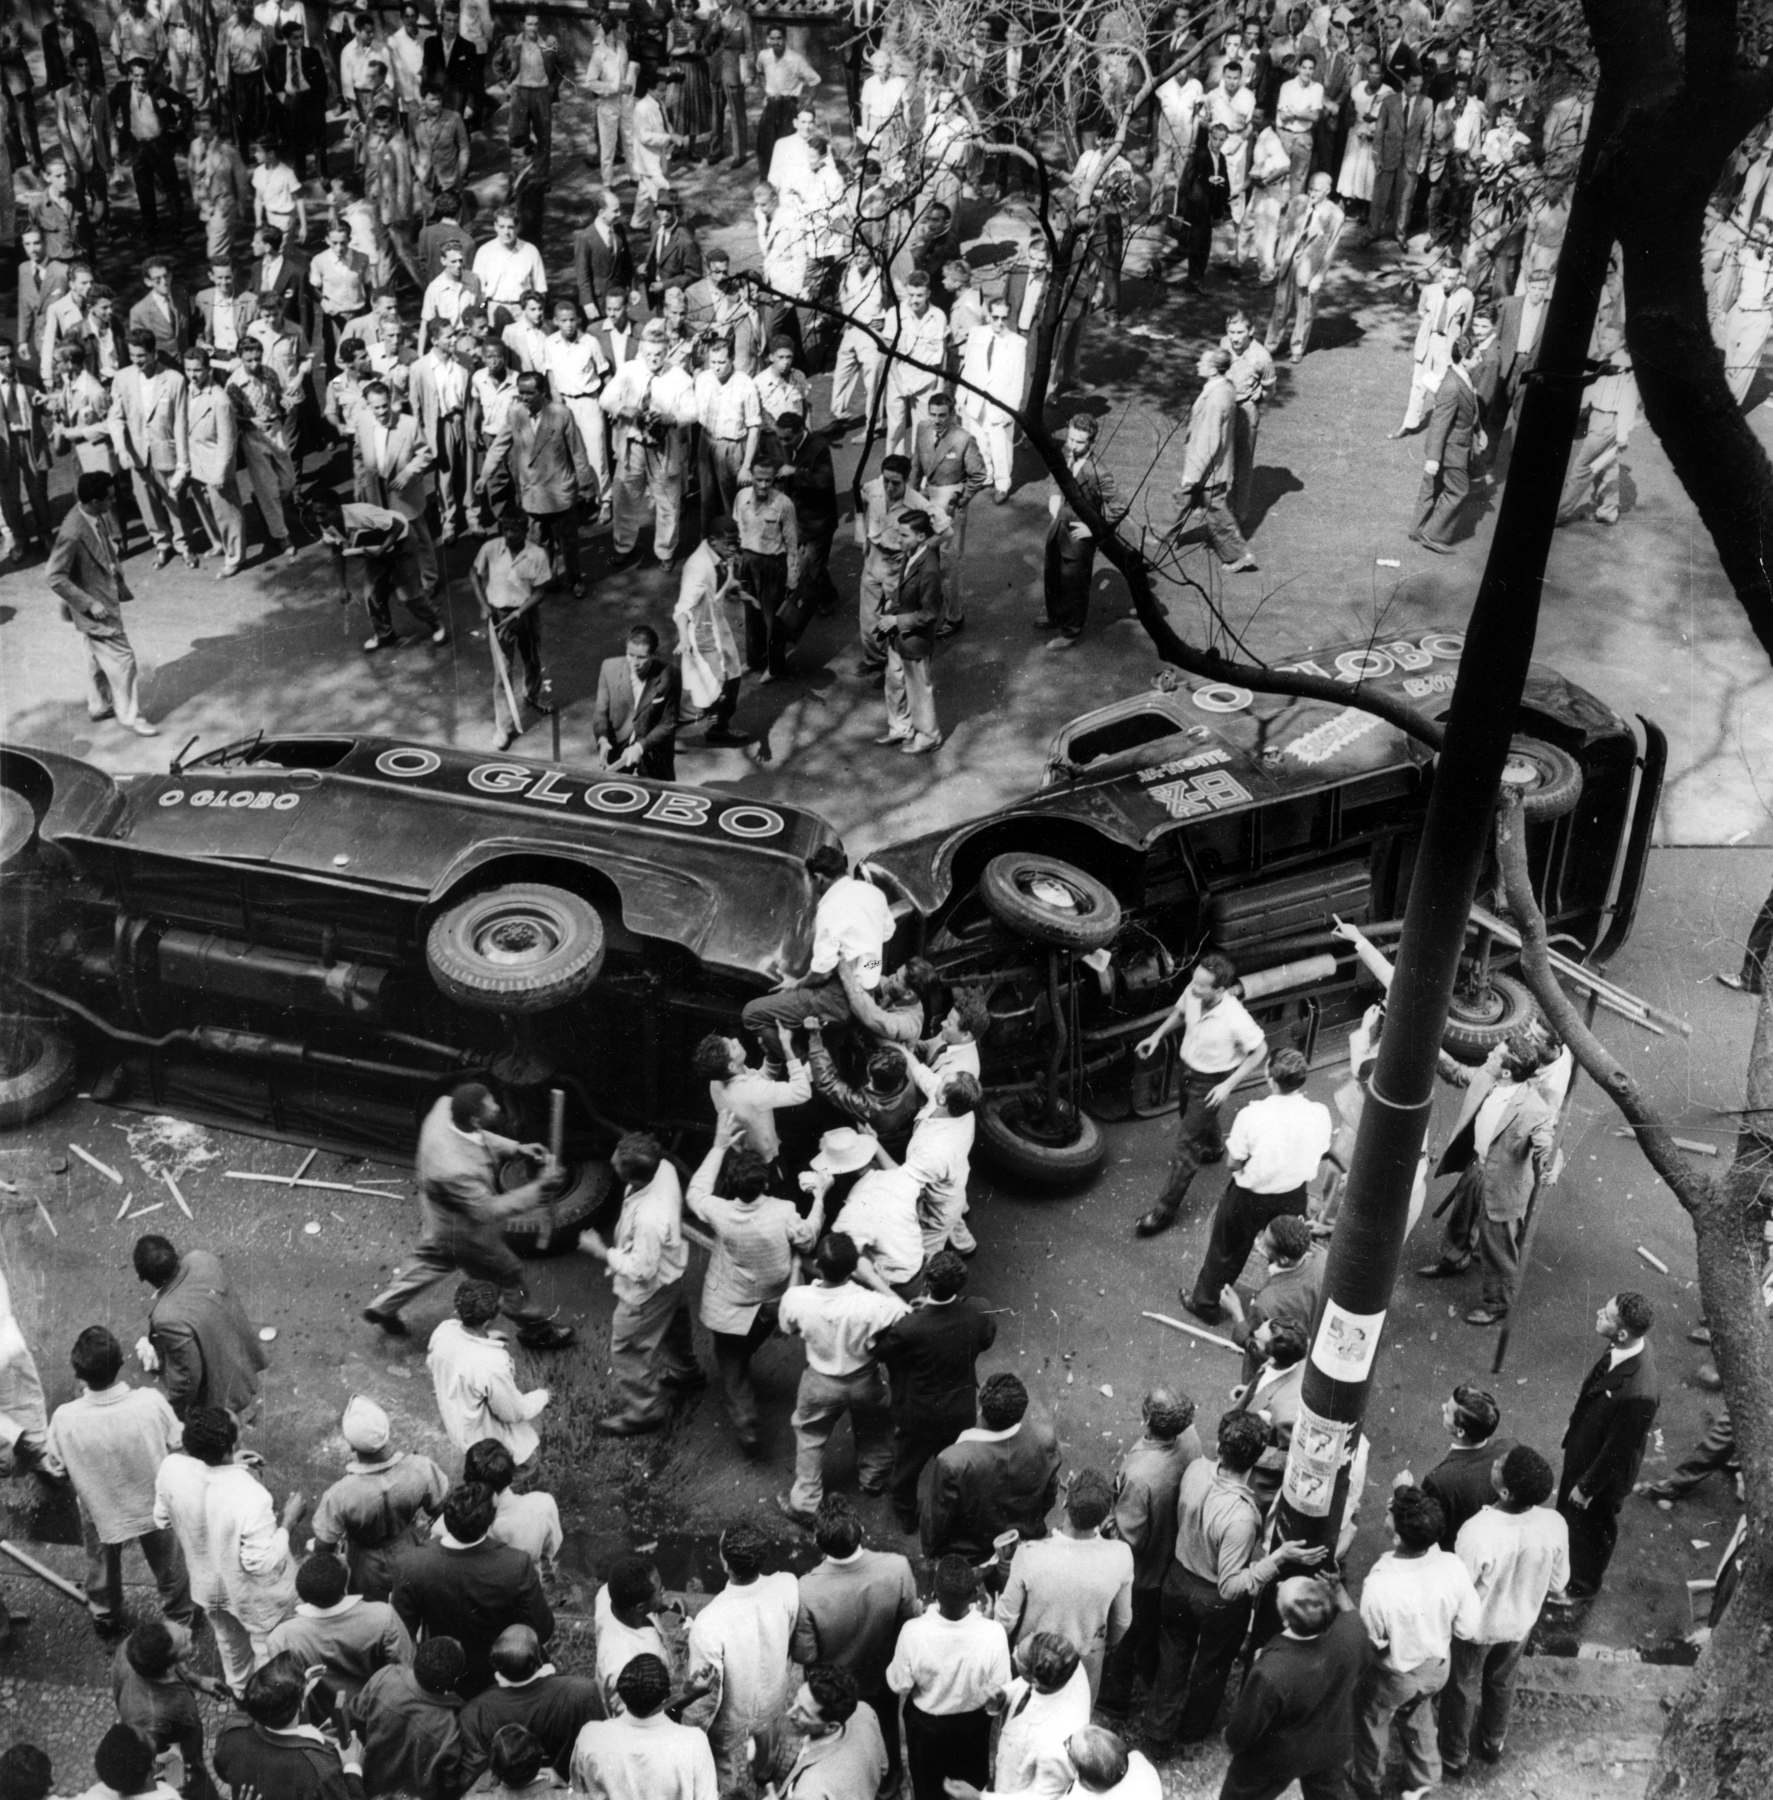 Fotografia em preto e branco. Dois veículos tombados, com as palavras 'O Globo' na lataria, e ao redor, dezenas de pessoas aglomeradas, algumas portando bastões.